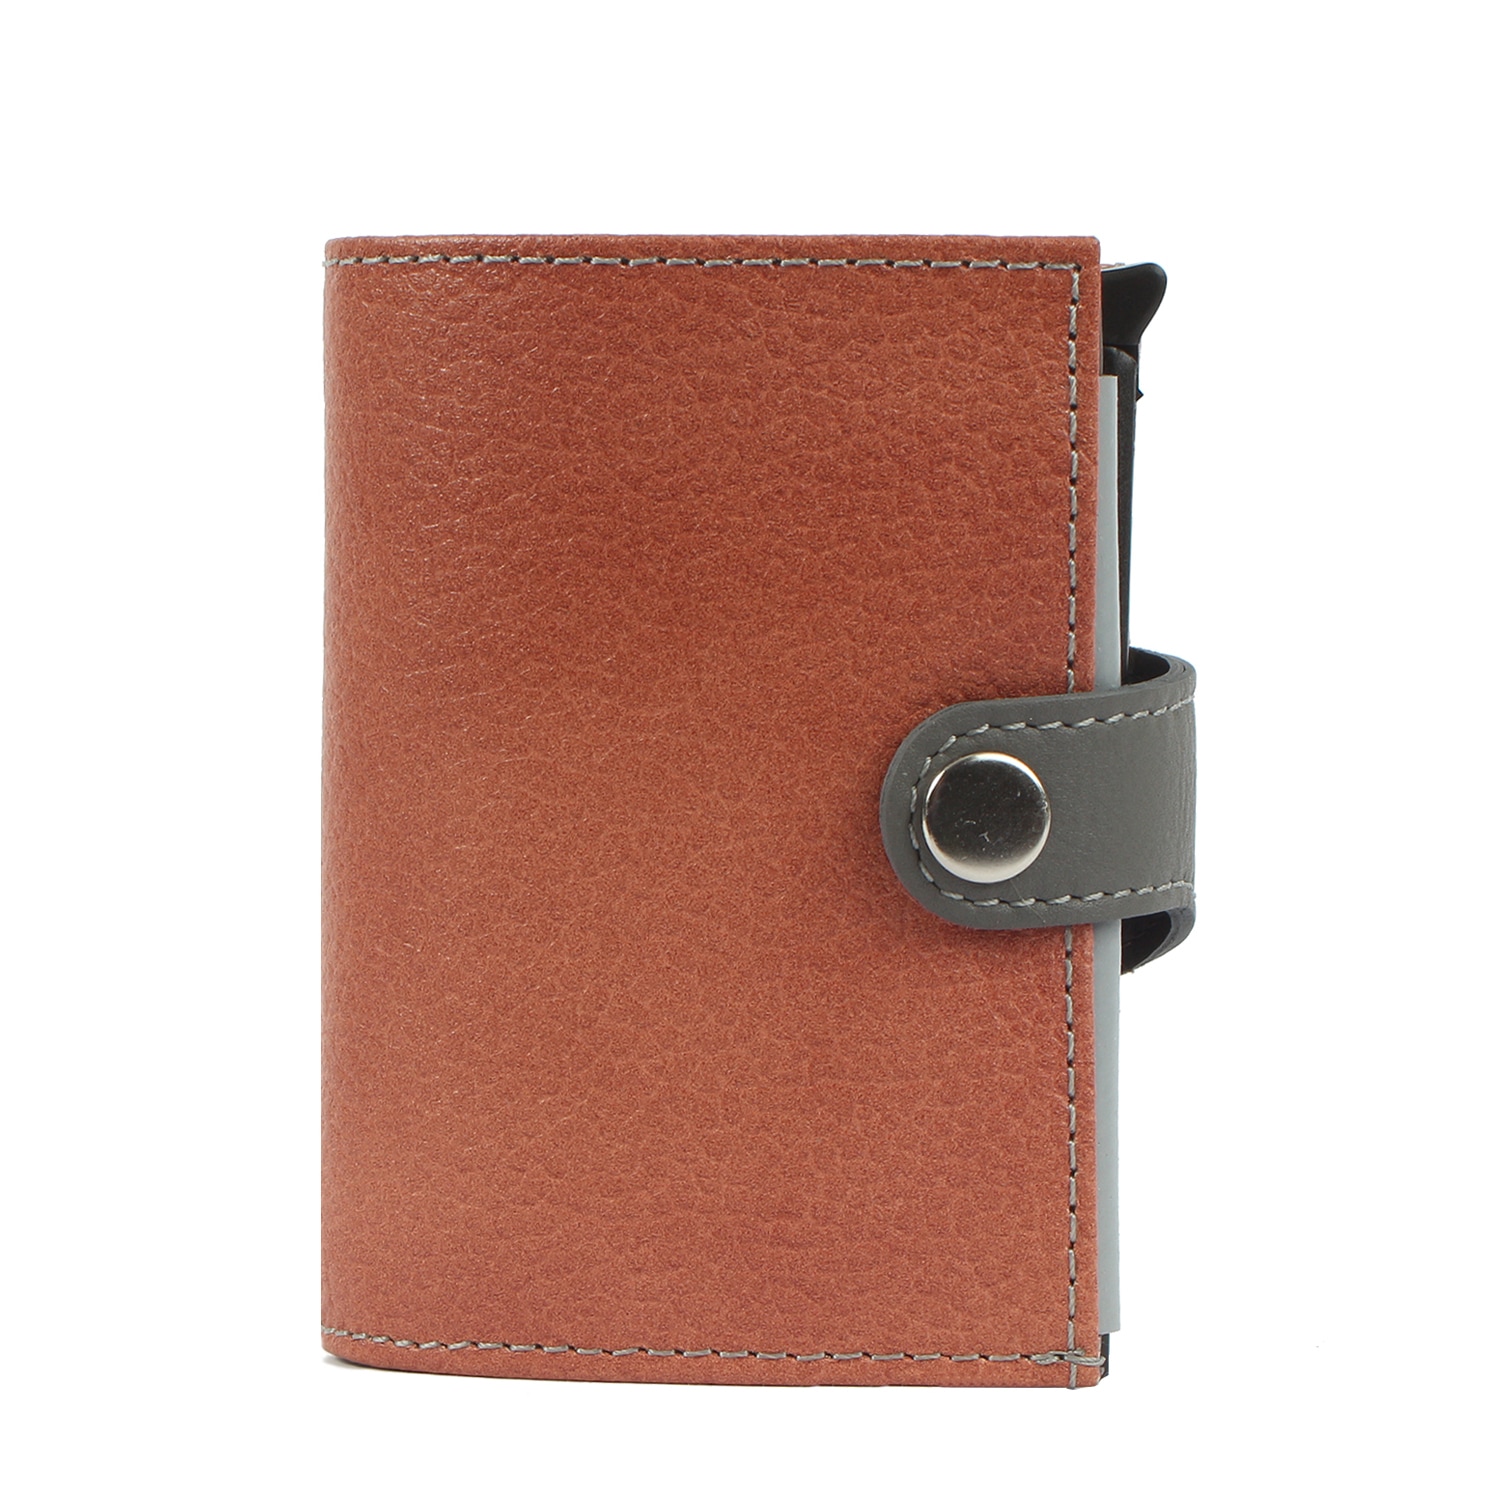 Margelisch Mini Geldbörse »noonyu double leather«, RFID Kreditkartenbörse  aus Upcycling Leder kaufen | I\'m walking